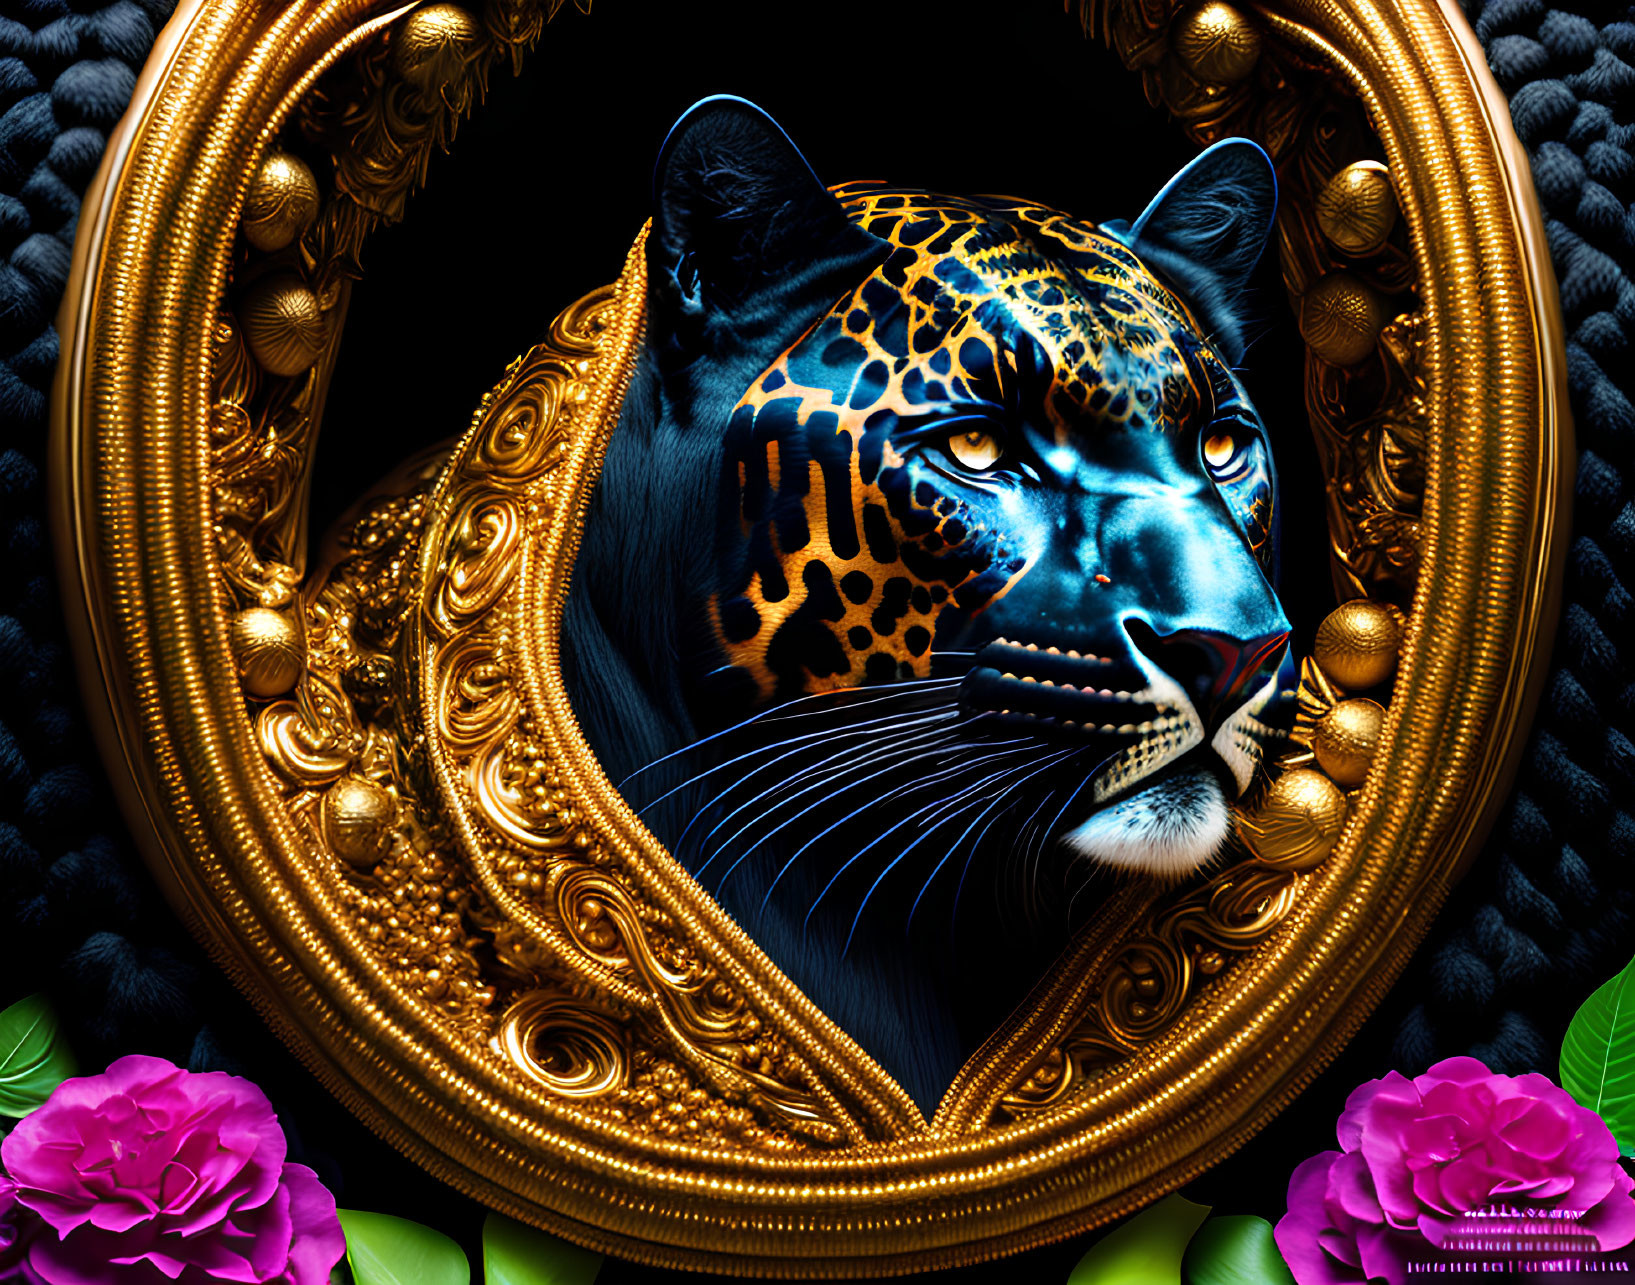 Detailed Jaguar Head Illustration in Golden Frame with Pink Flowers